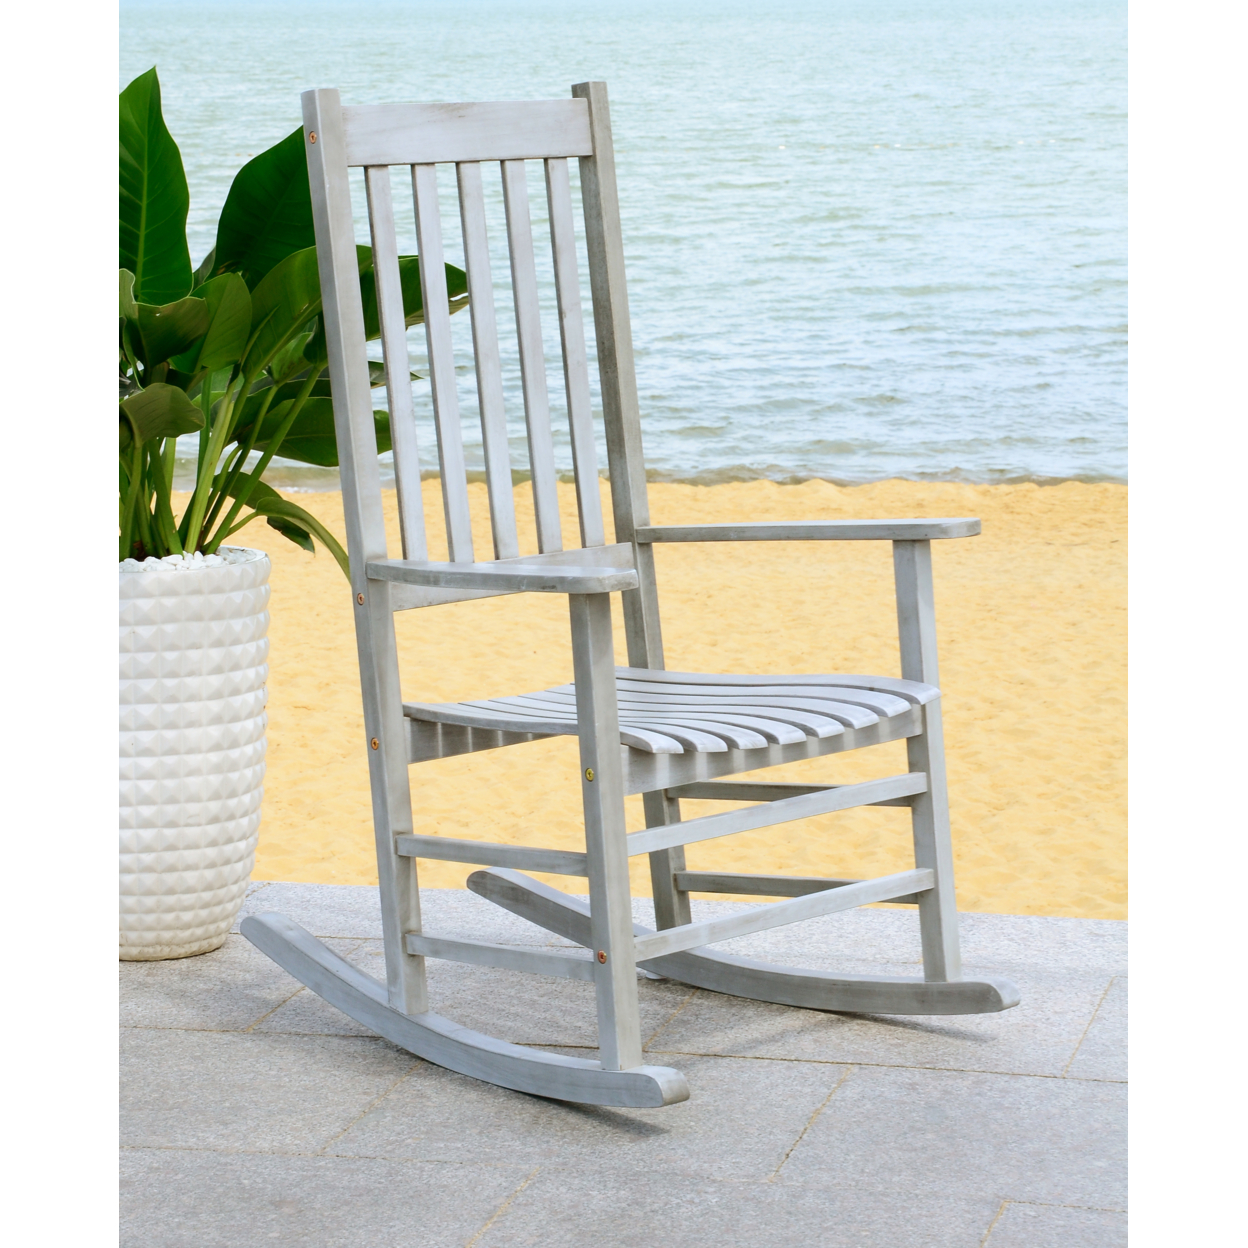 SAFAVIEH Outdoor Collection Shasta Rocking Chair Grey Wash